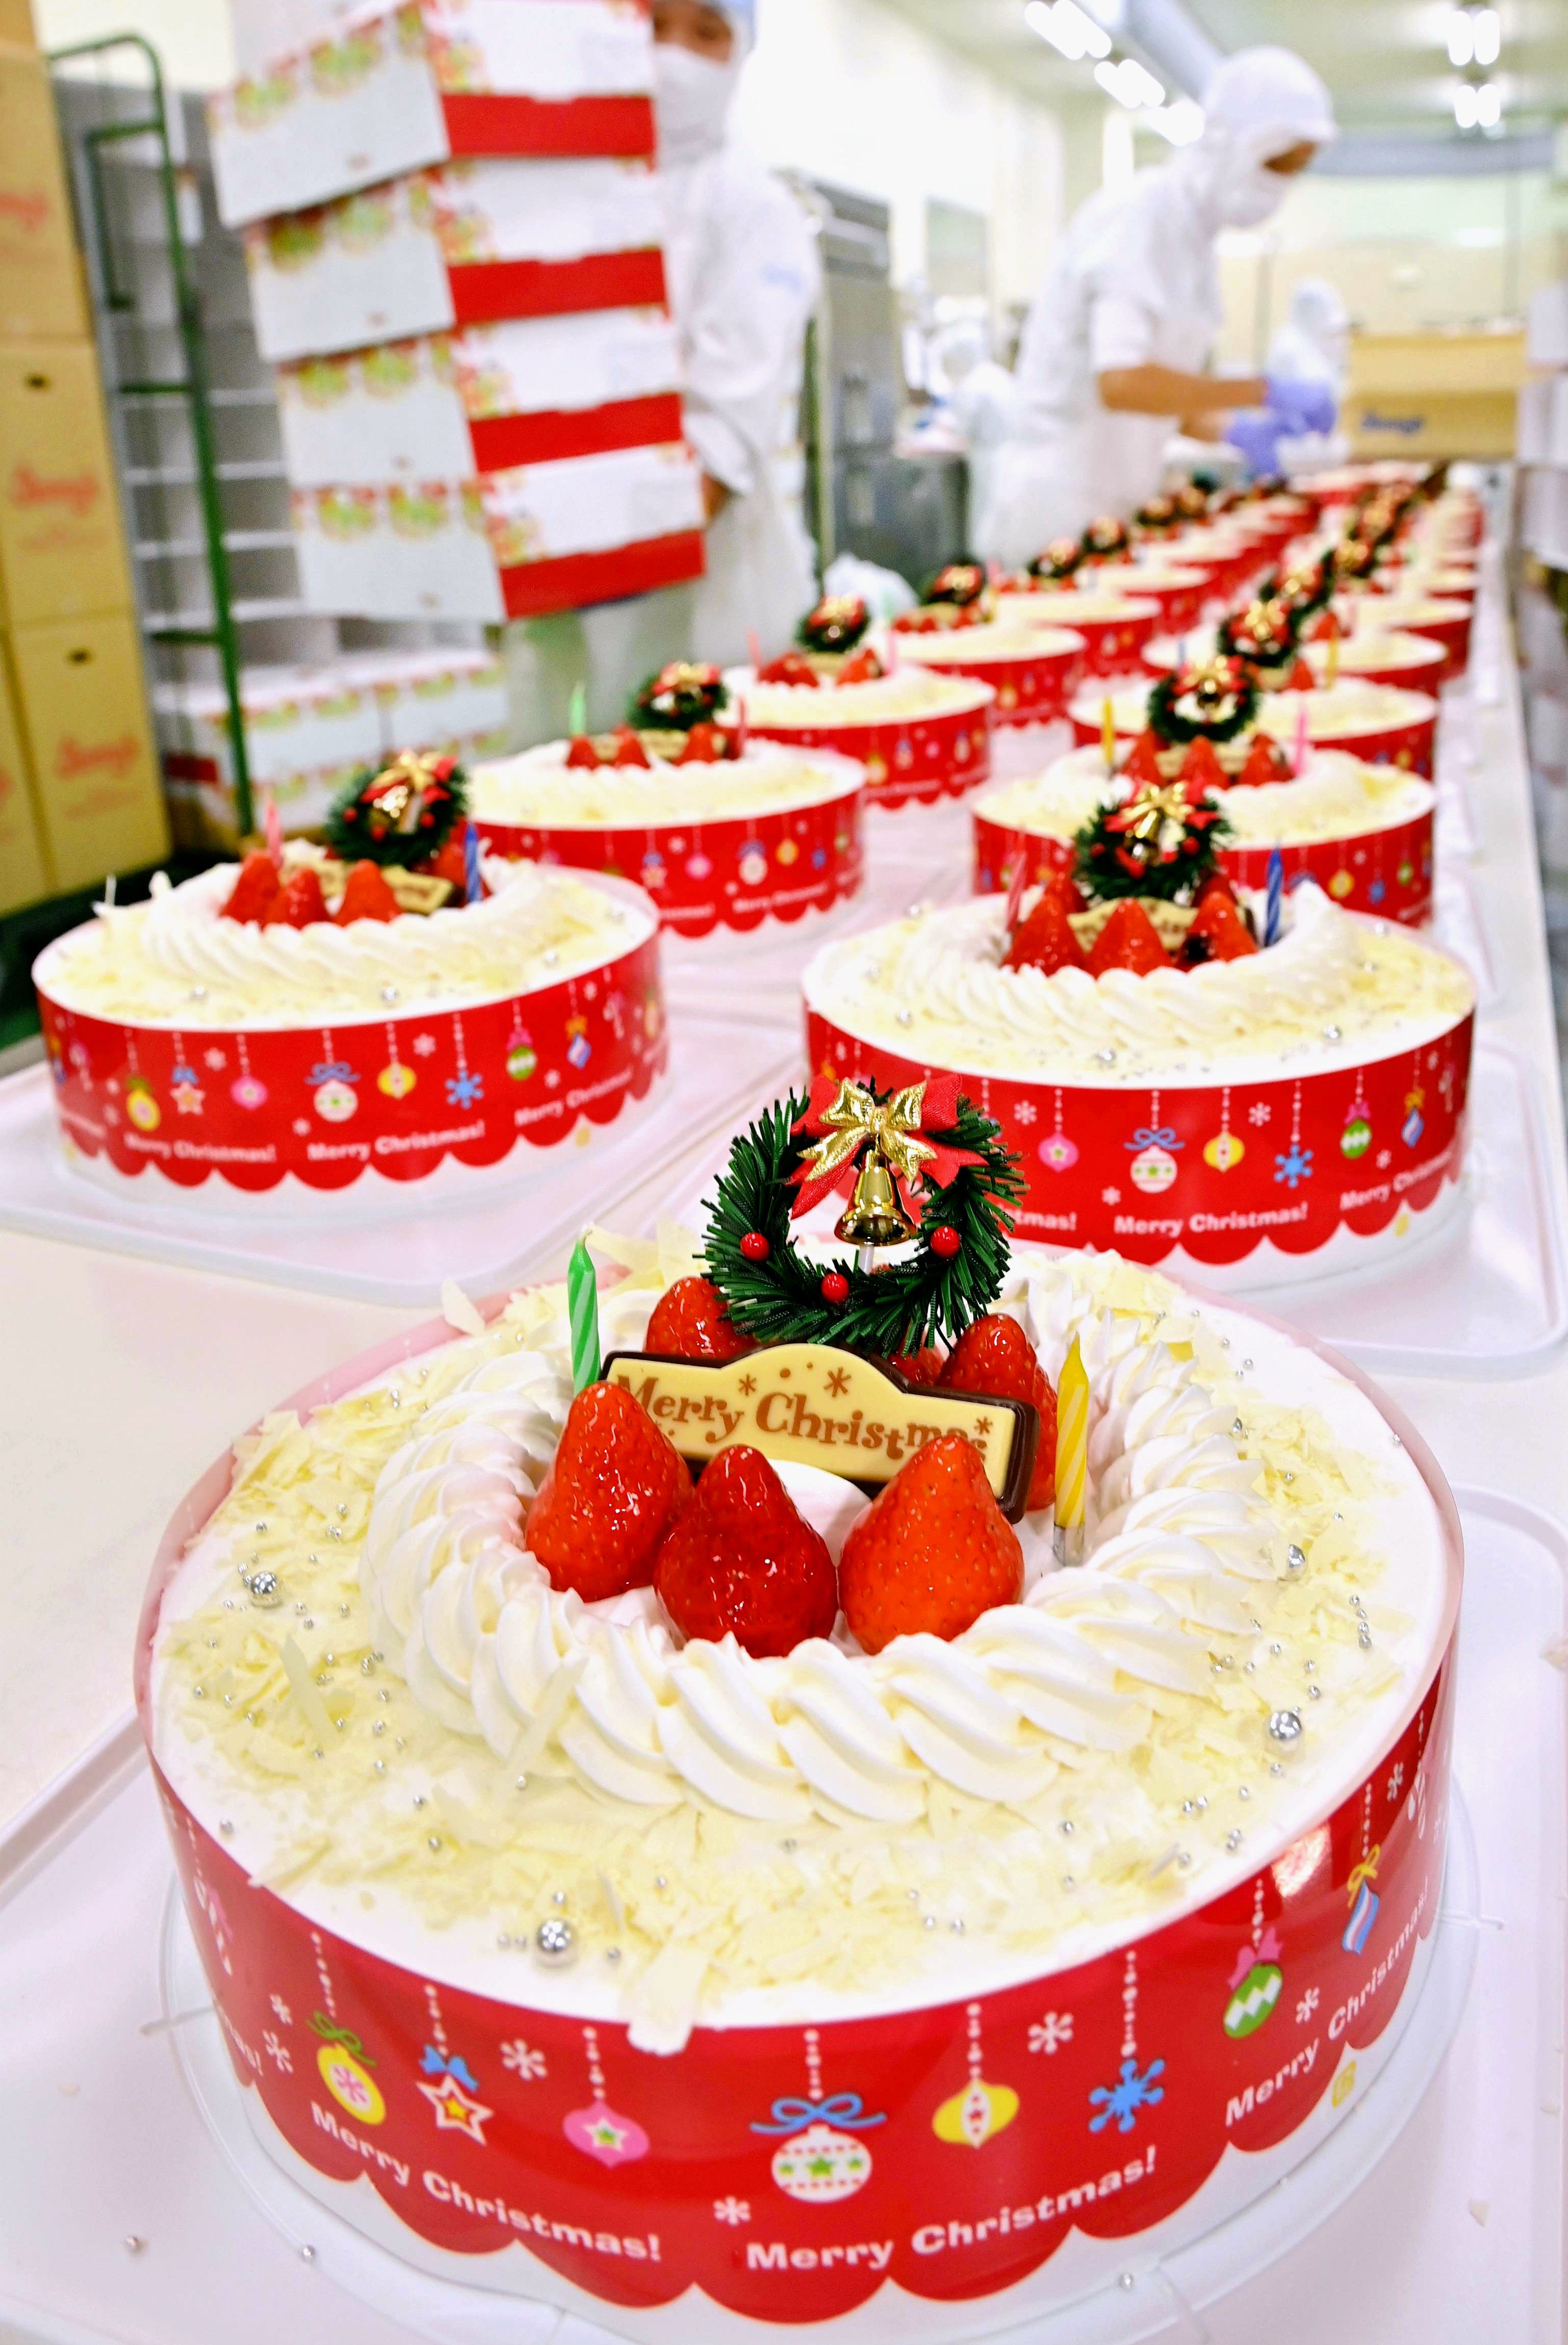 ジミーのケーキは普段の5倍以上 笑顔を思い浮かべ 大忙しのクリスマスイブ 沖縄タイムス プラス ニュース 沖縄タイムス プラス